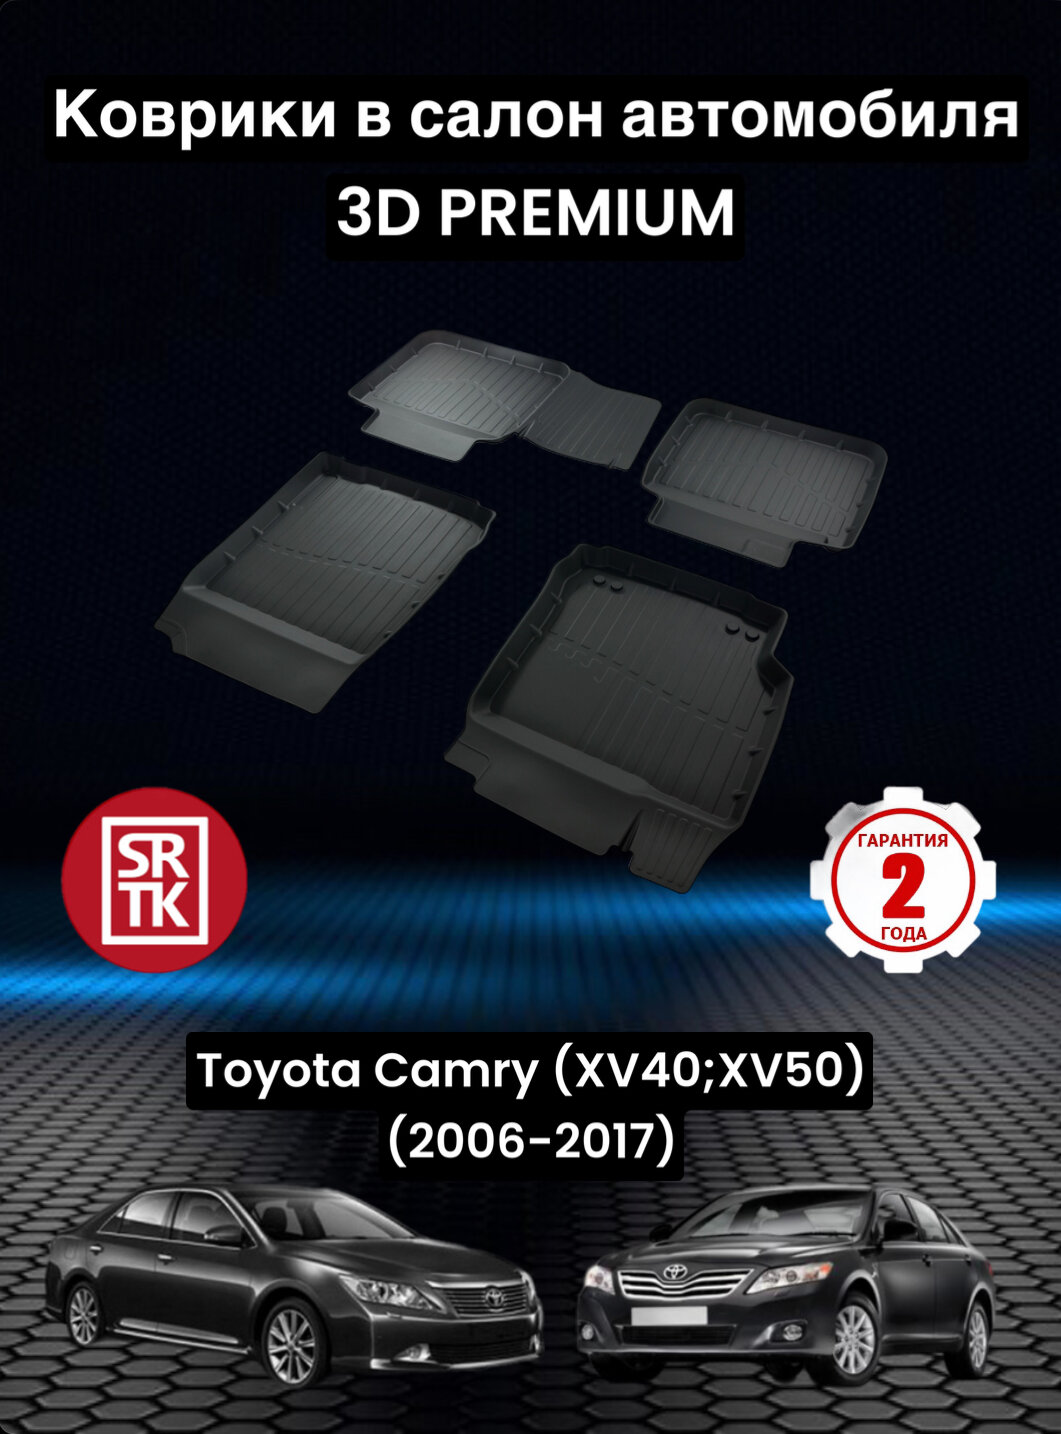 Коврики резиновые в салон для Тойота Камри 40/50/Toyota Camry XV40/XV50 (2006-2017) 3D PREMIUM SRTK (Саранск) комплект в салон